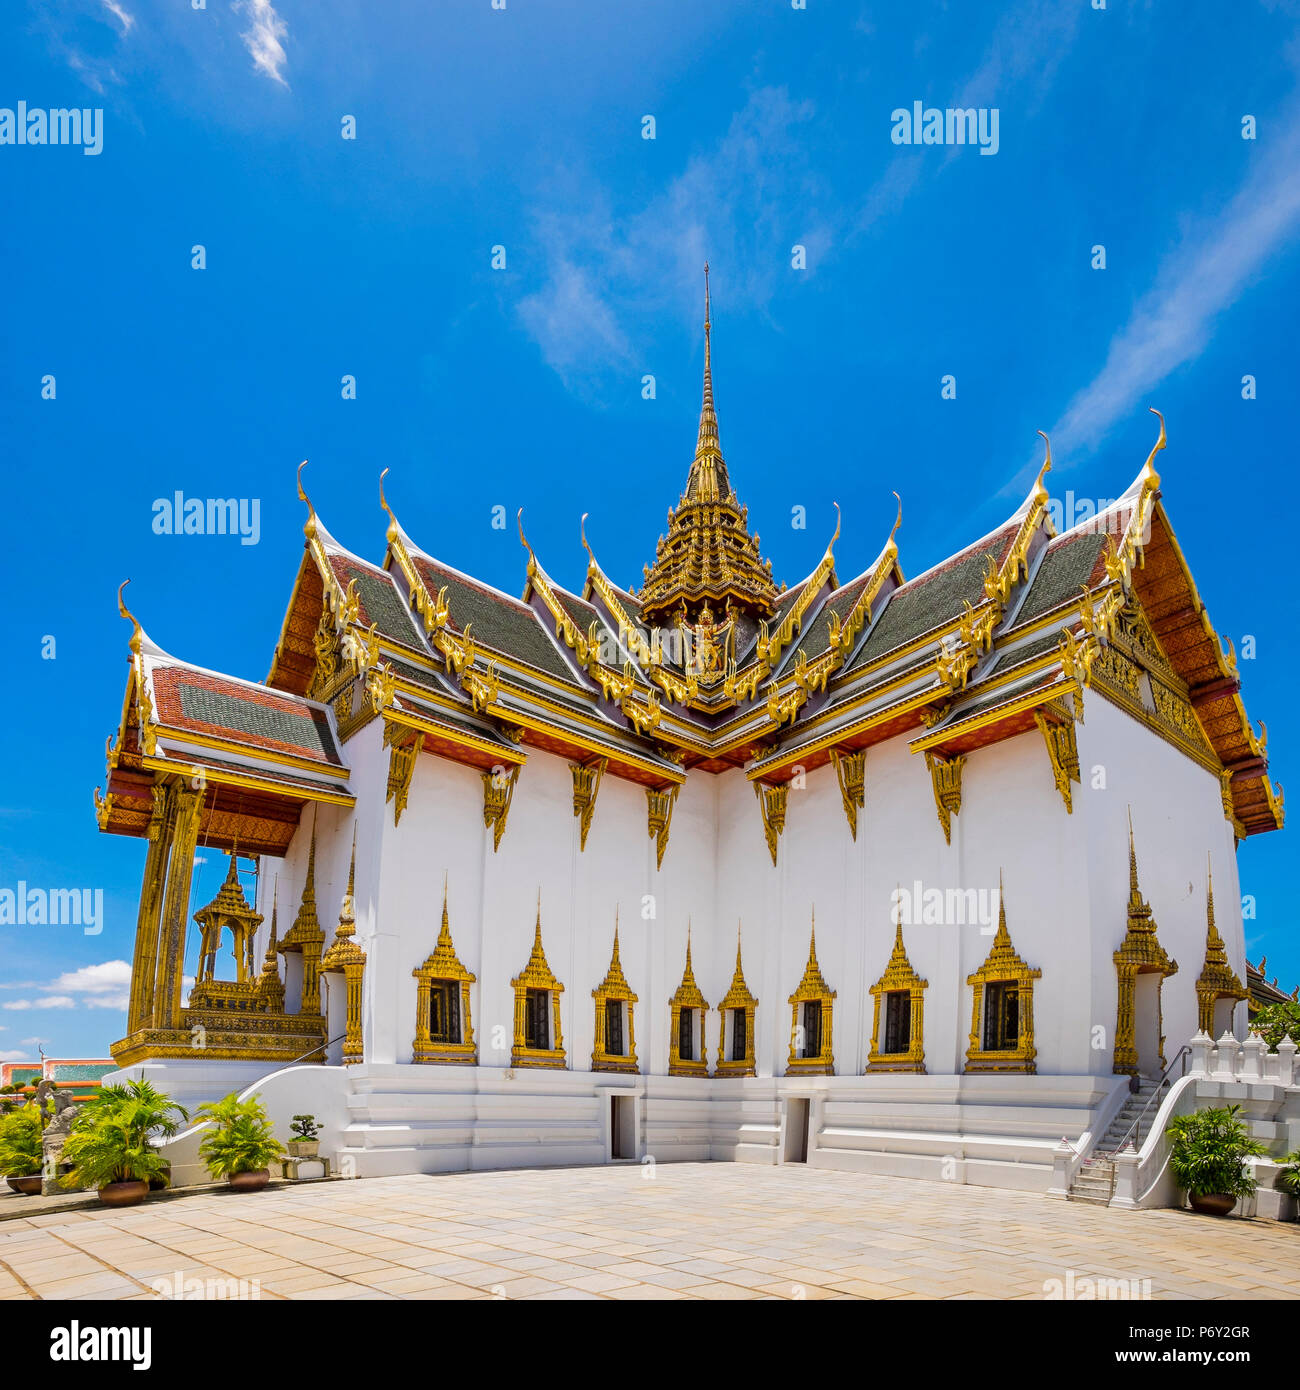 Phra Thinang Dusit Maha Prasat throne hall at the Grand Palace complex, Bangkok, Thailand Stock Photo